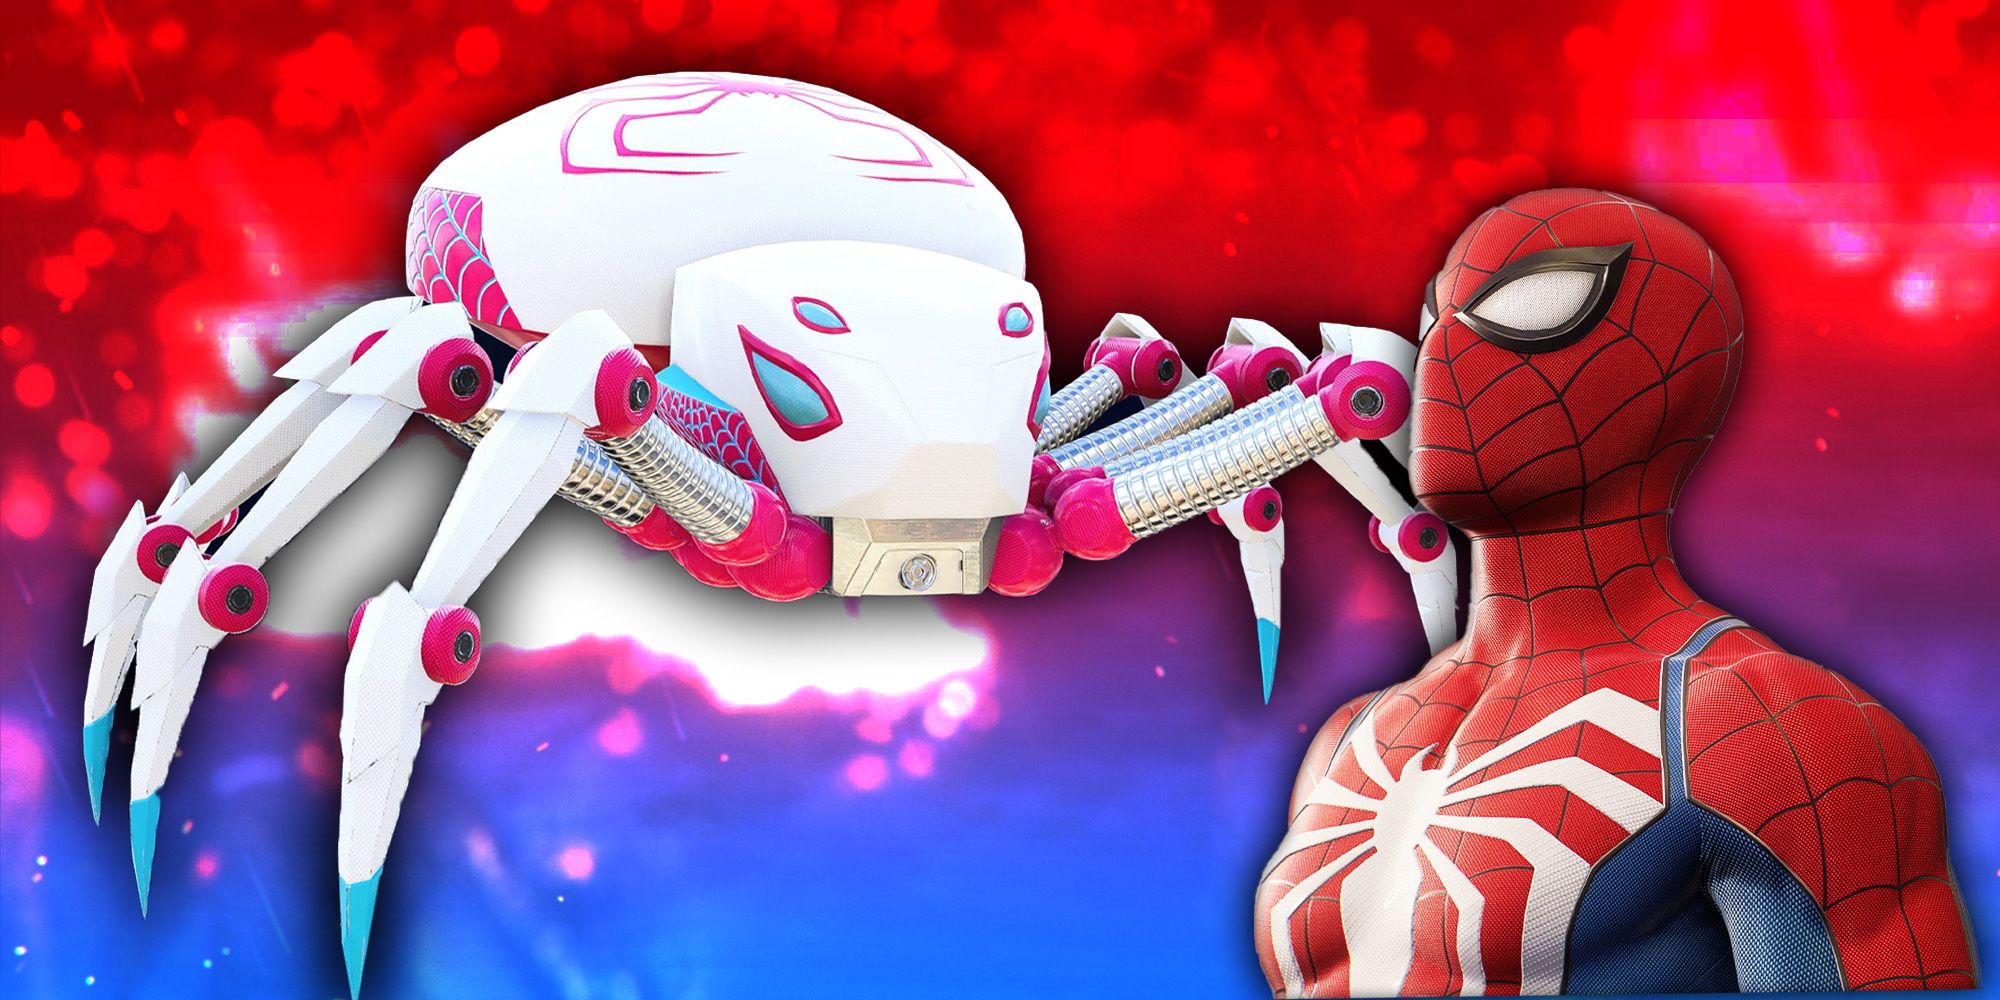 Gwen Stacy Spider-Bot steht bereit neben einer Darstellung von Spider-Man vor einem glitzernden roten und blauen Hintergrund.